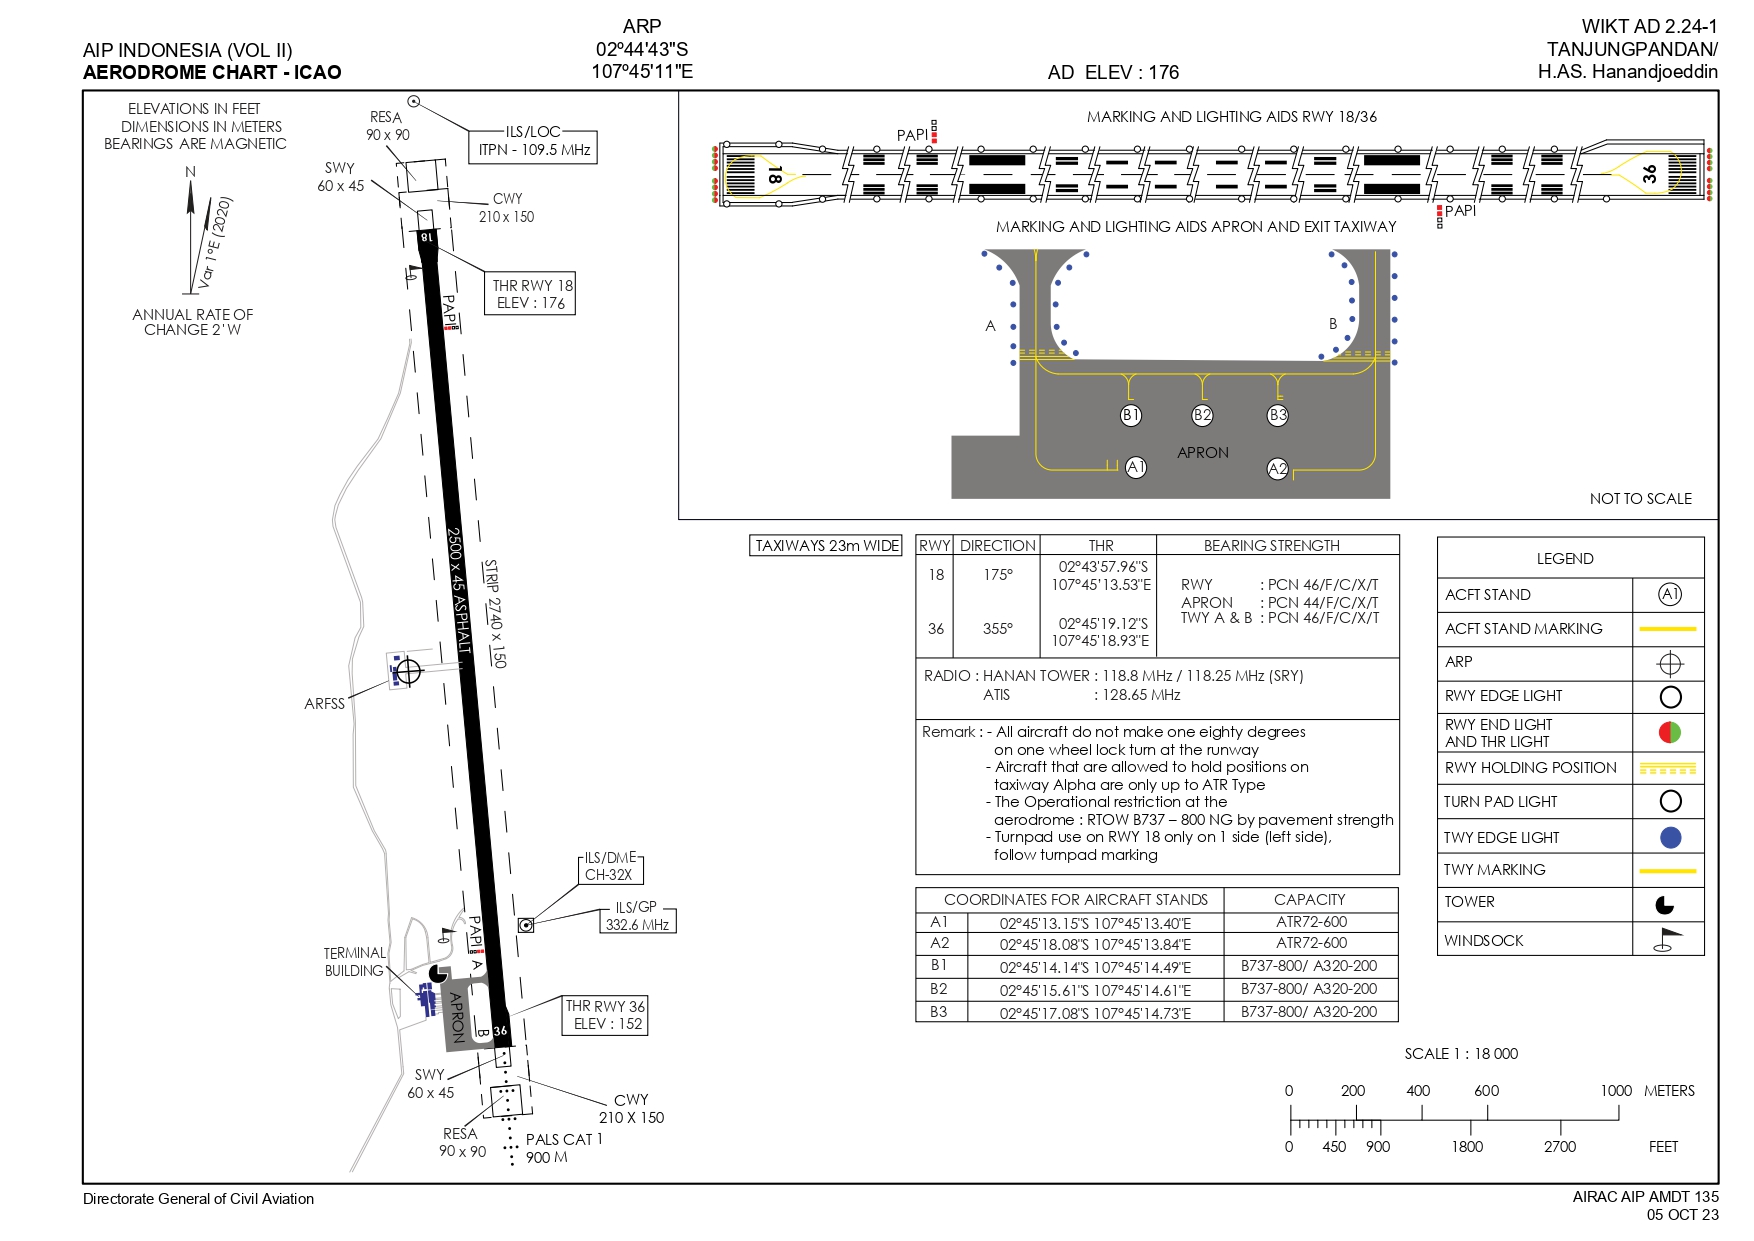 Gambar Peta Bandara AERODROME CHART TANJUNG PANDAN / H.AS. HANADJOEDIN